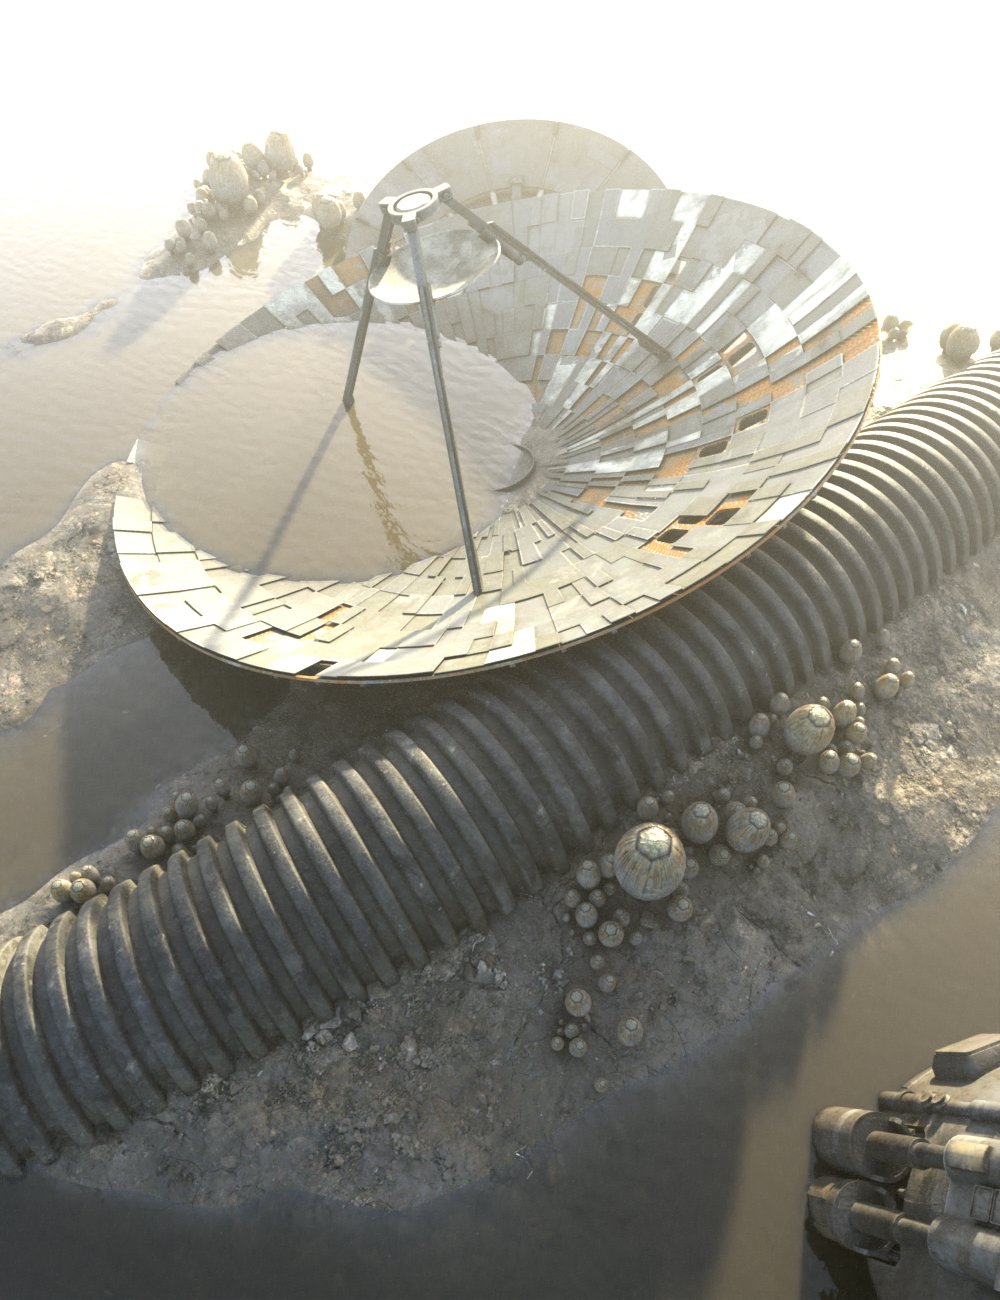 Sci-Fi Debris Field by: Tim Payne, 3D Models by Daz 3D